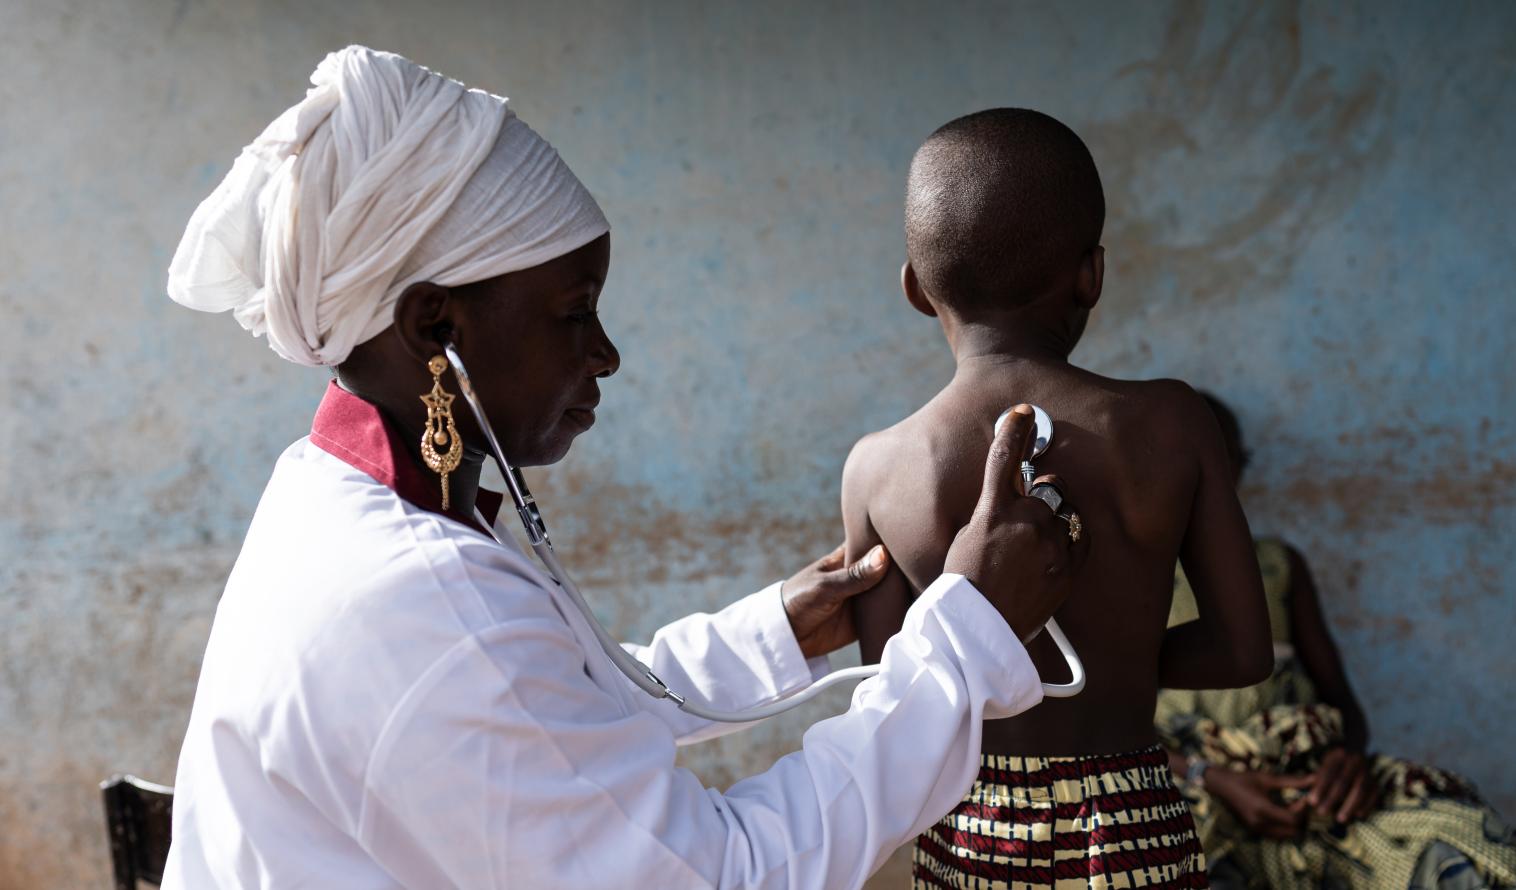 Arzt in weißer Uniform, der mit einem Stethoskop die Lungentöne eines kleinen Jungen abhört